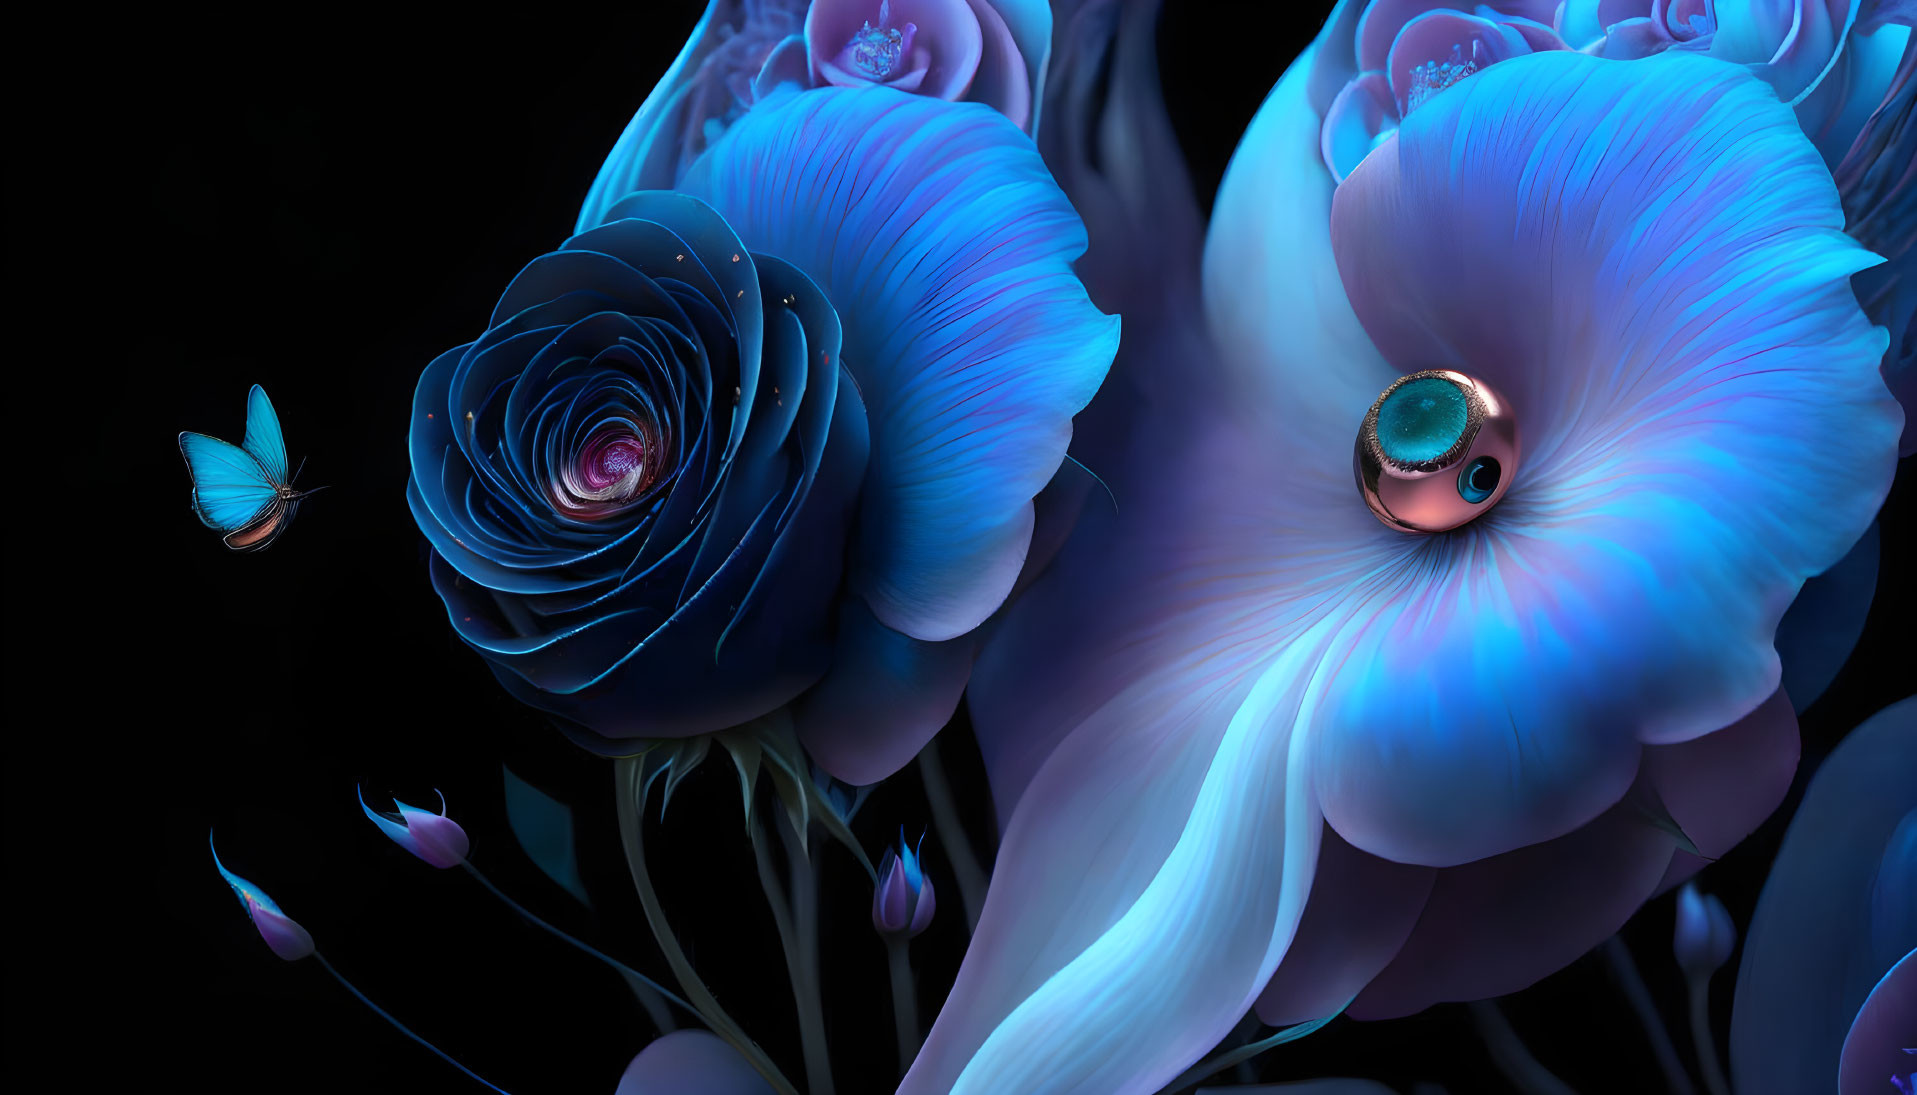 Petals of a Blue Rose